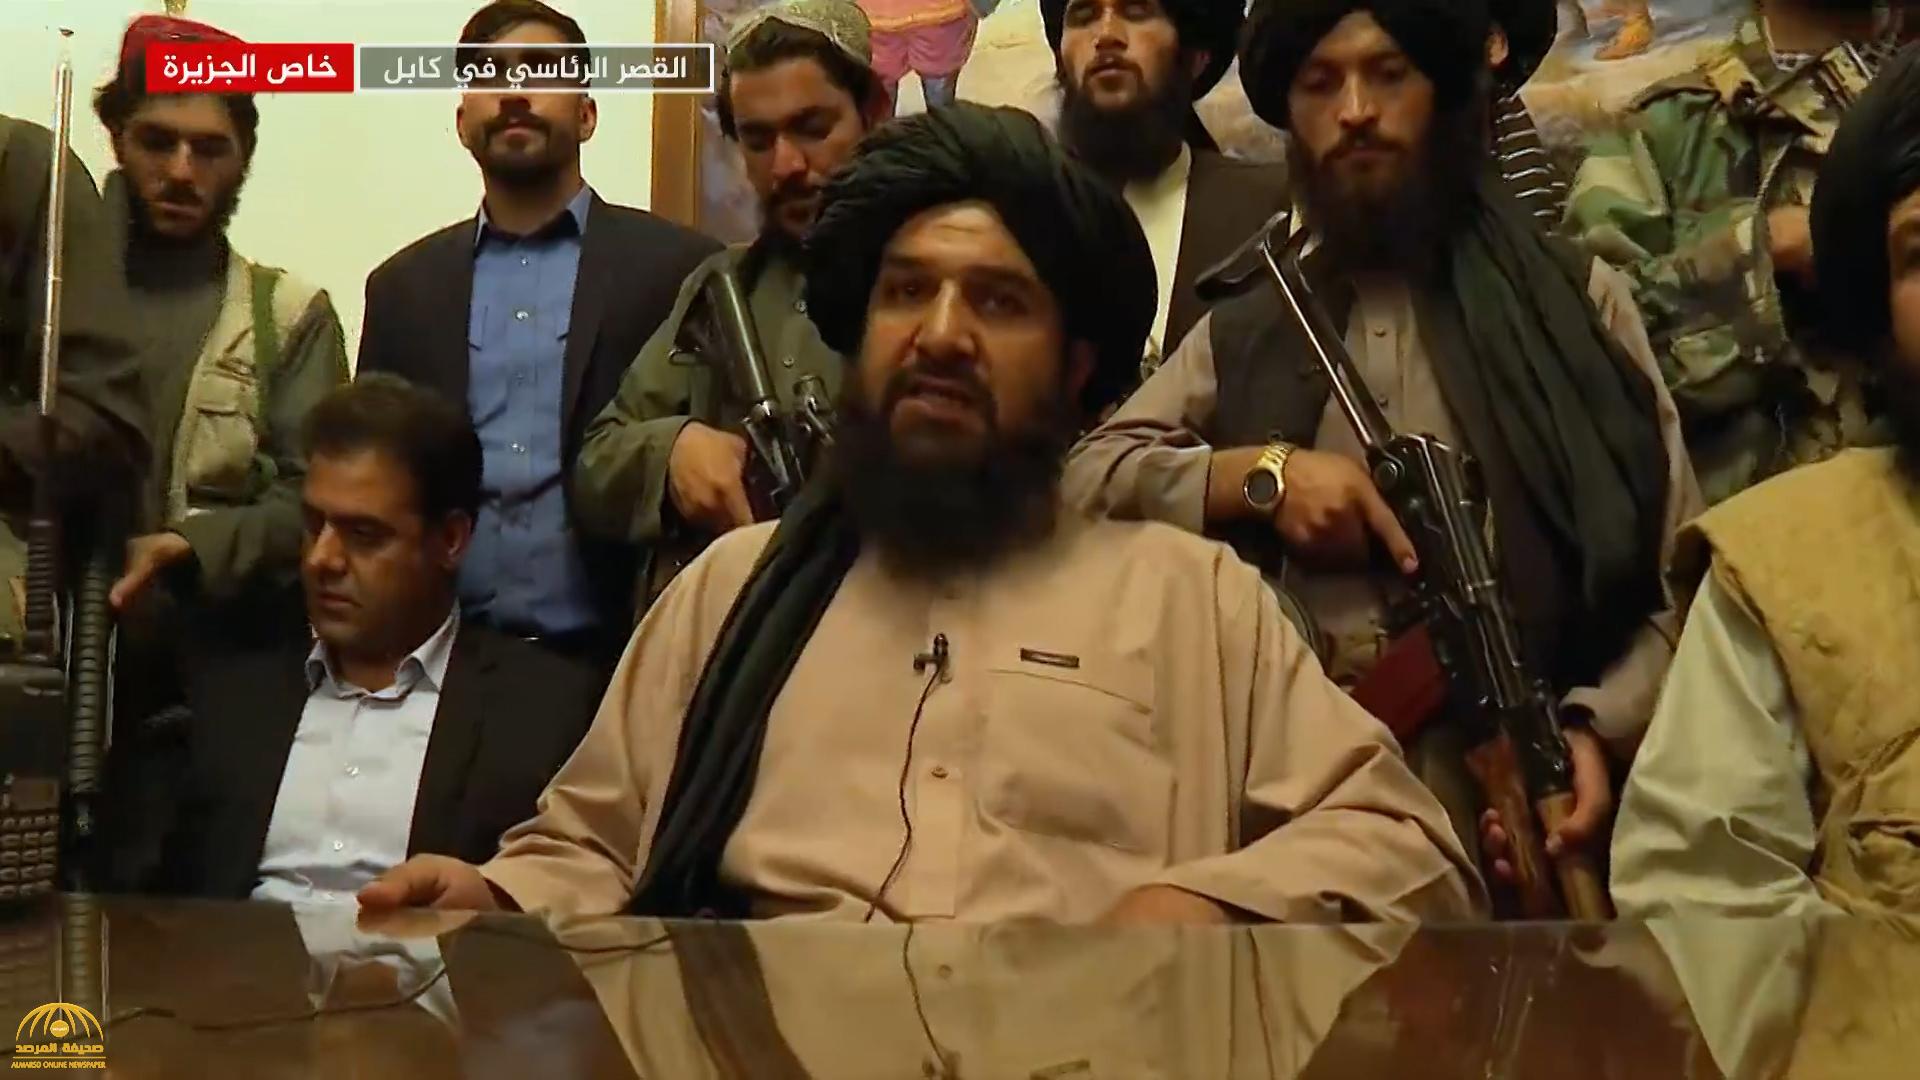 طالبان  تعلن خسائرها في هجوم  داعش الإرهابي .. وتكشف عن  "خطوتها المقبلة"